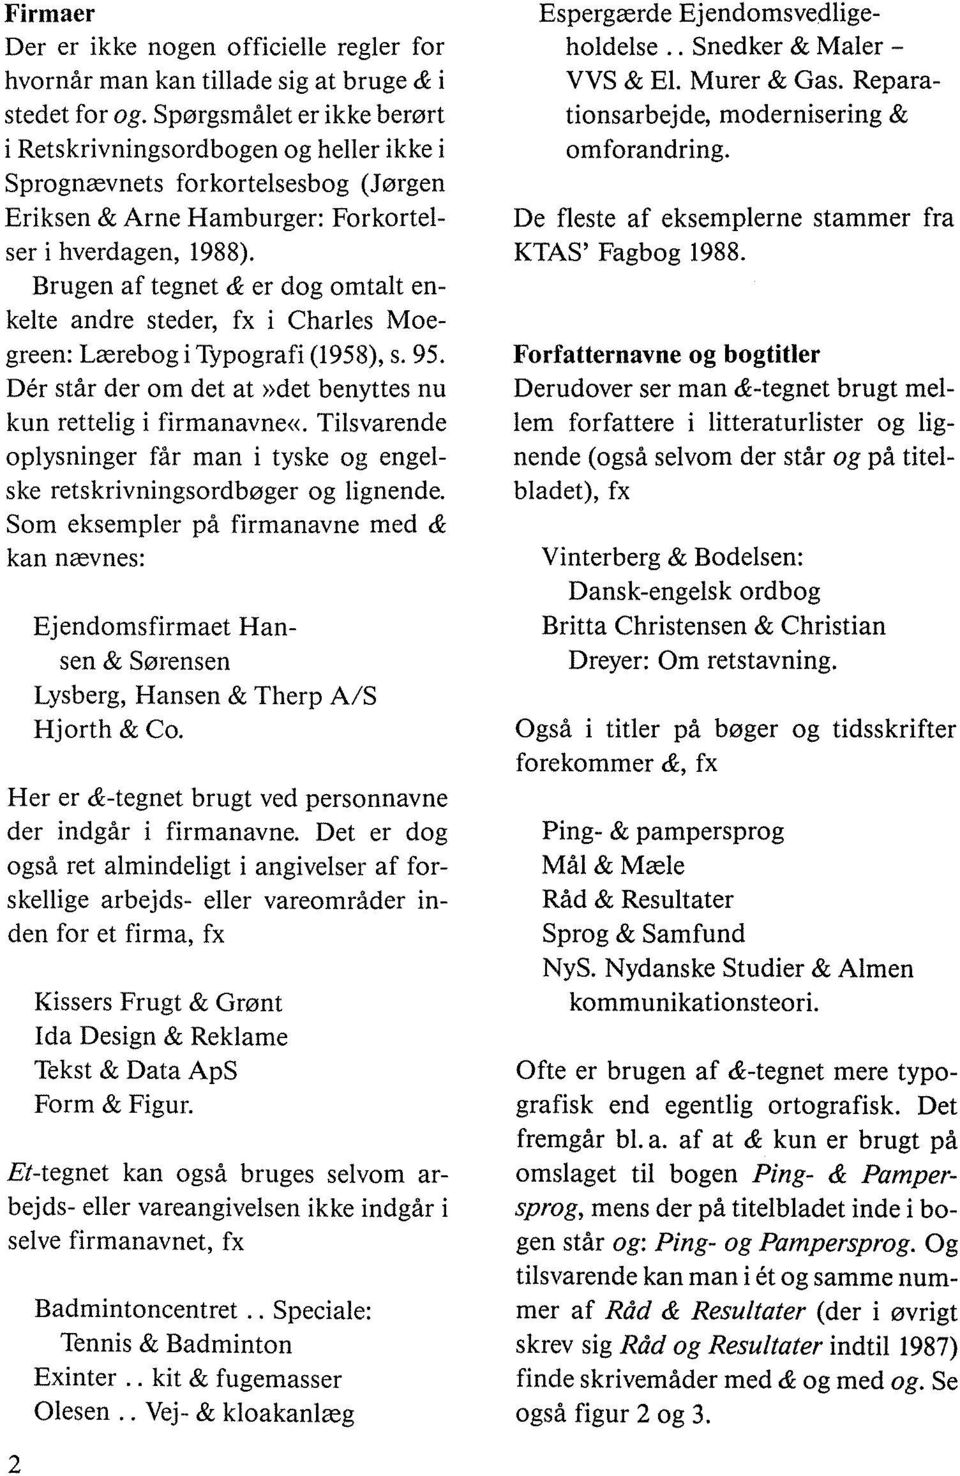 Brugen af tegnet & er dog omtalt enkelte andre steder, fx i Charles Moegreen: Lærebog i Typografi (1958), s. 95. Der står der om det at»det benyttes nu kun rettelig i firmanavne«.